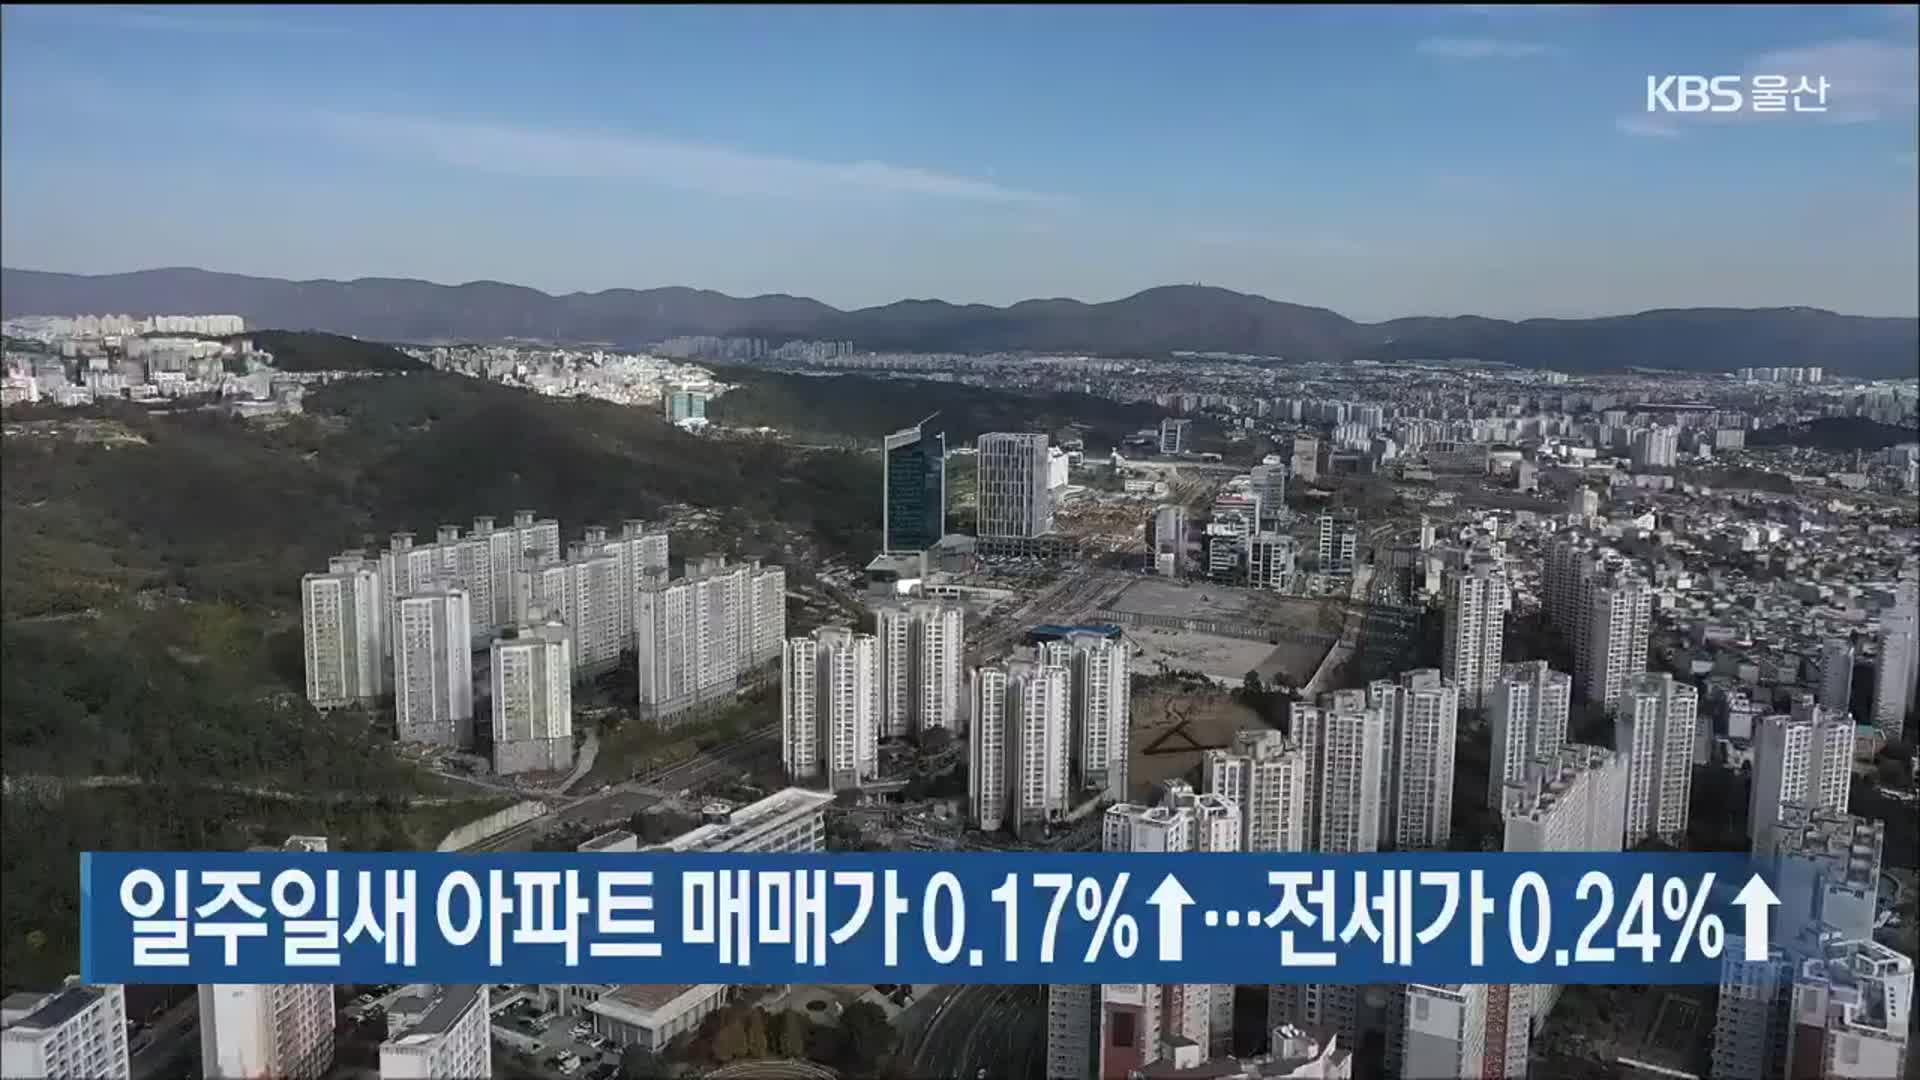 일주일새 울산 아파트 매매가 0.17%↑…전세가 0.24%↑